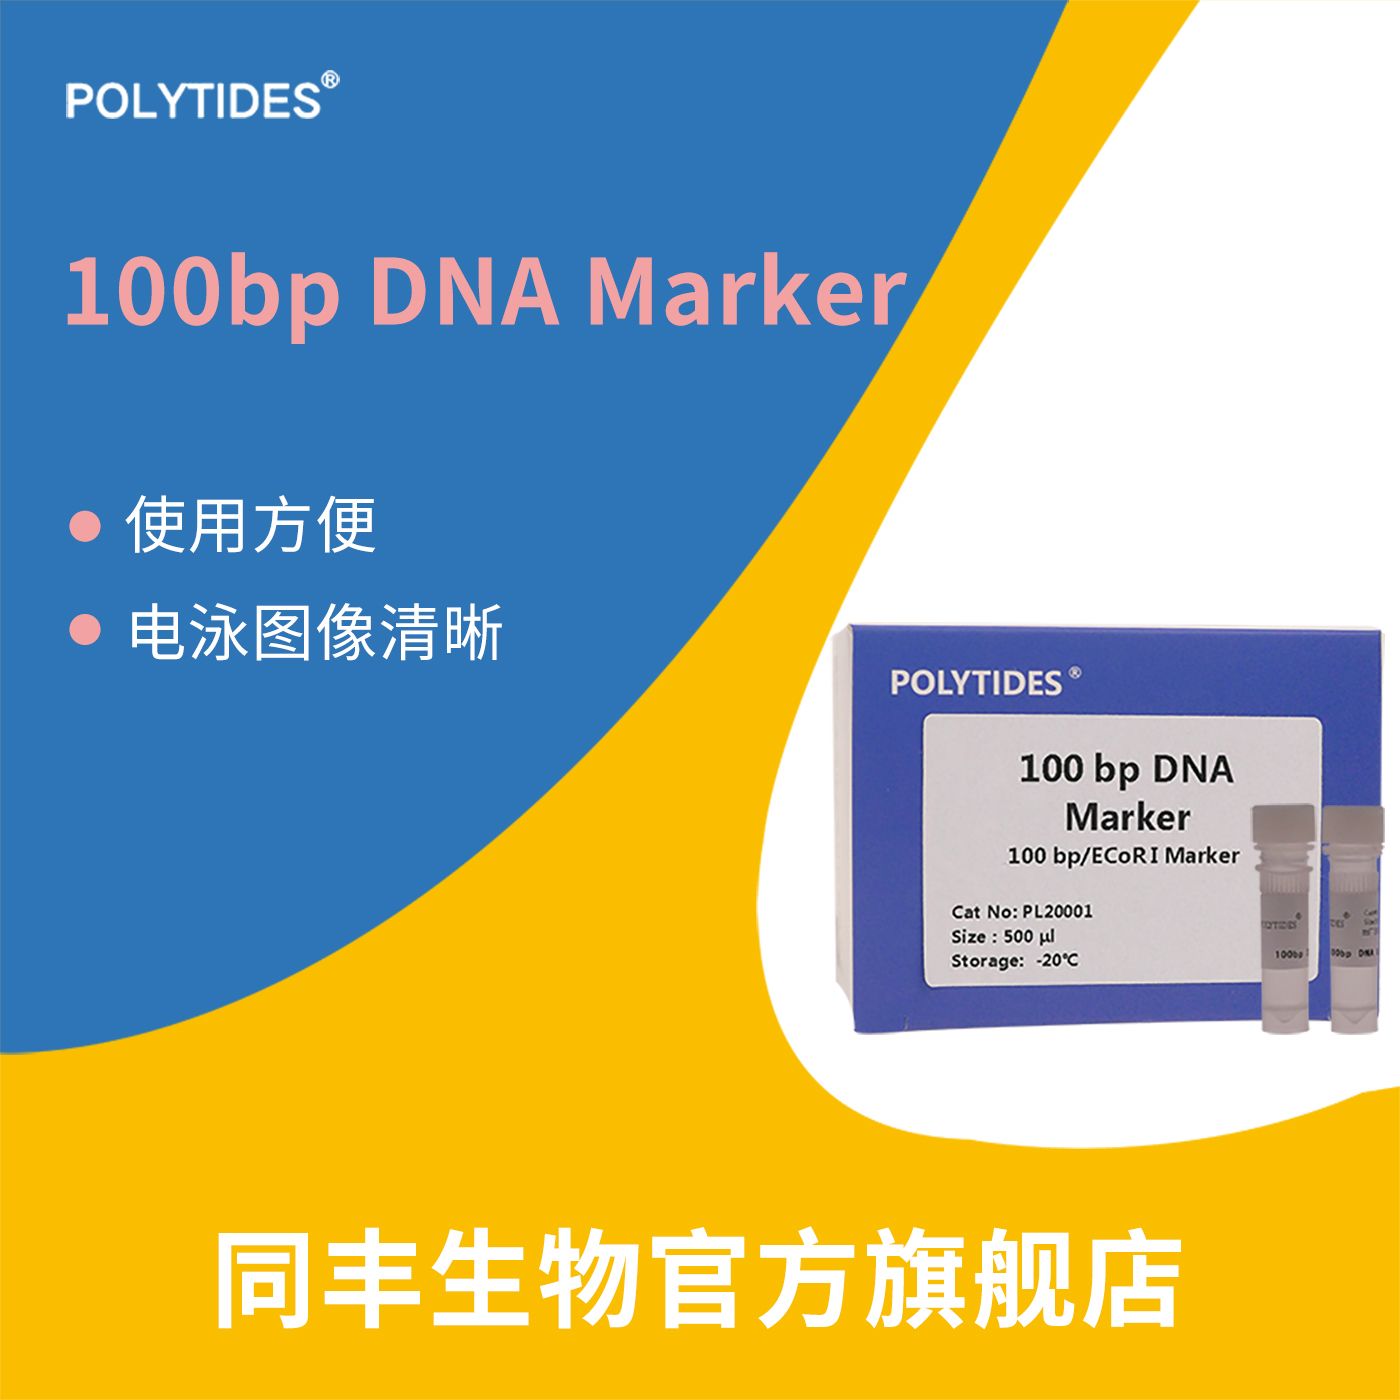 100 bp DNA Marker